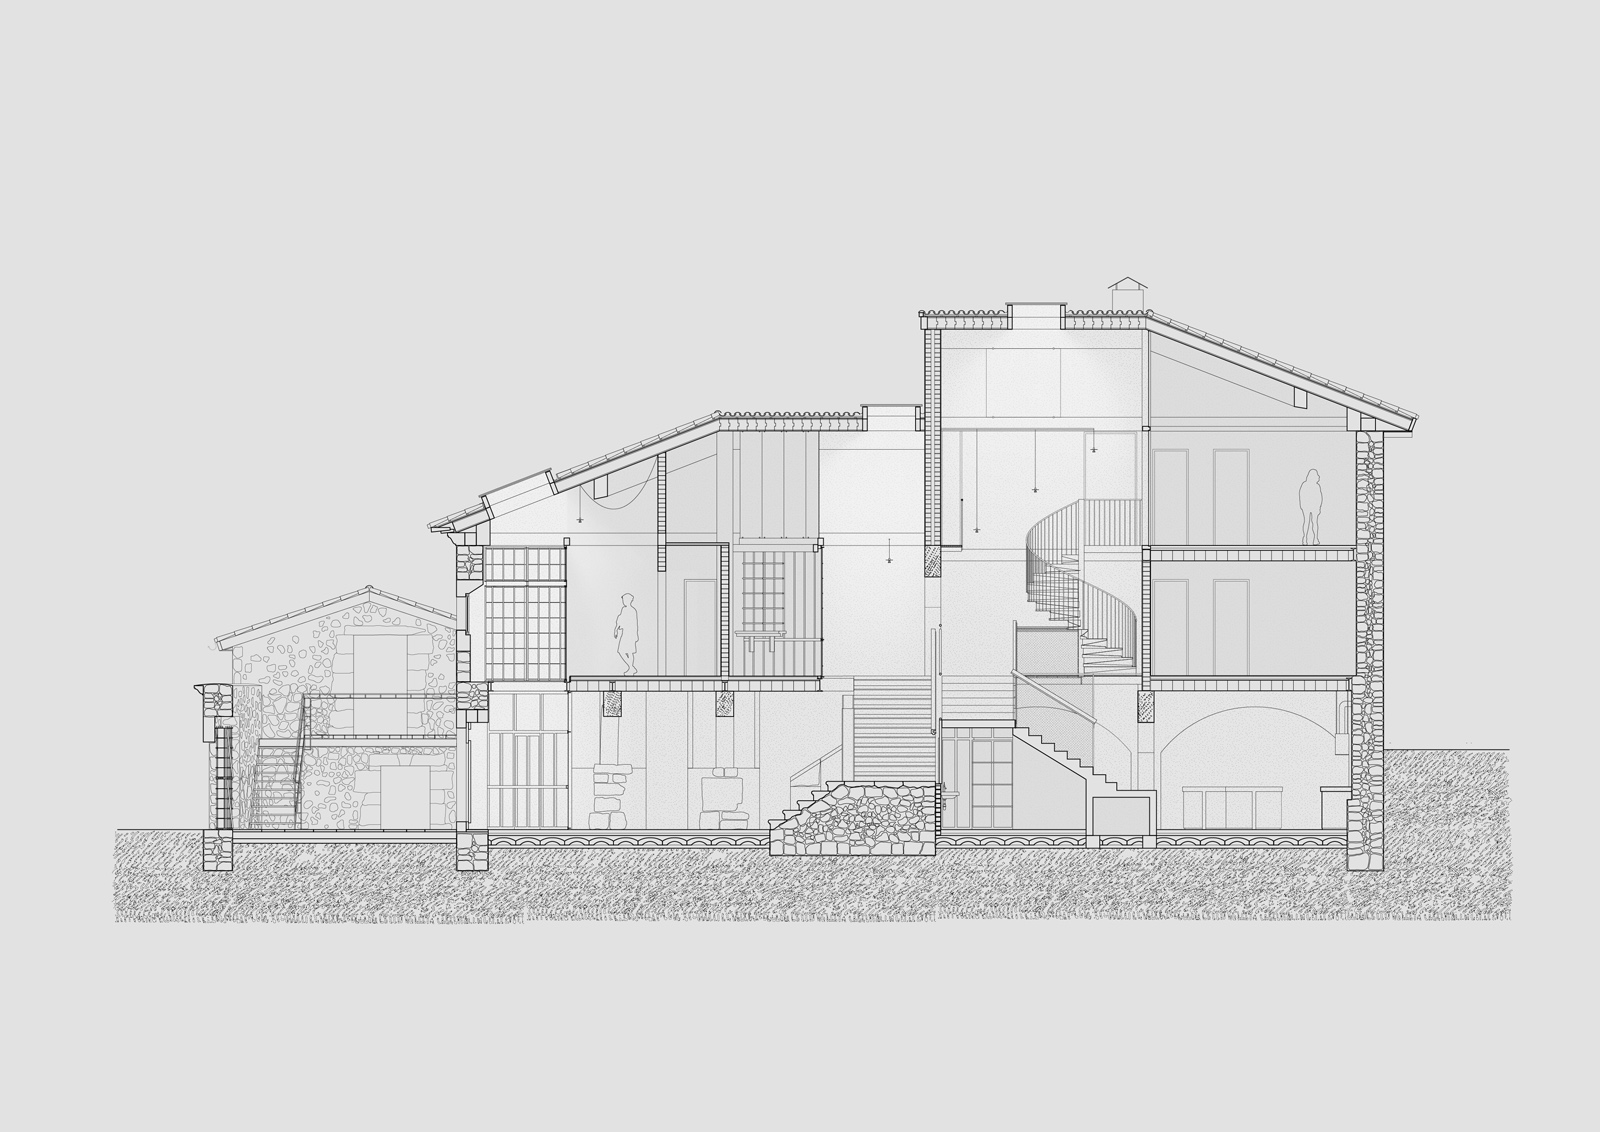 Image of 20230302 AtienzaMaure Priorato Plans 1 in El Priorato - Cosentino